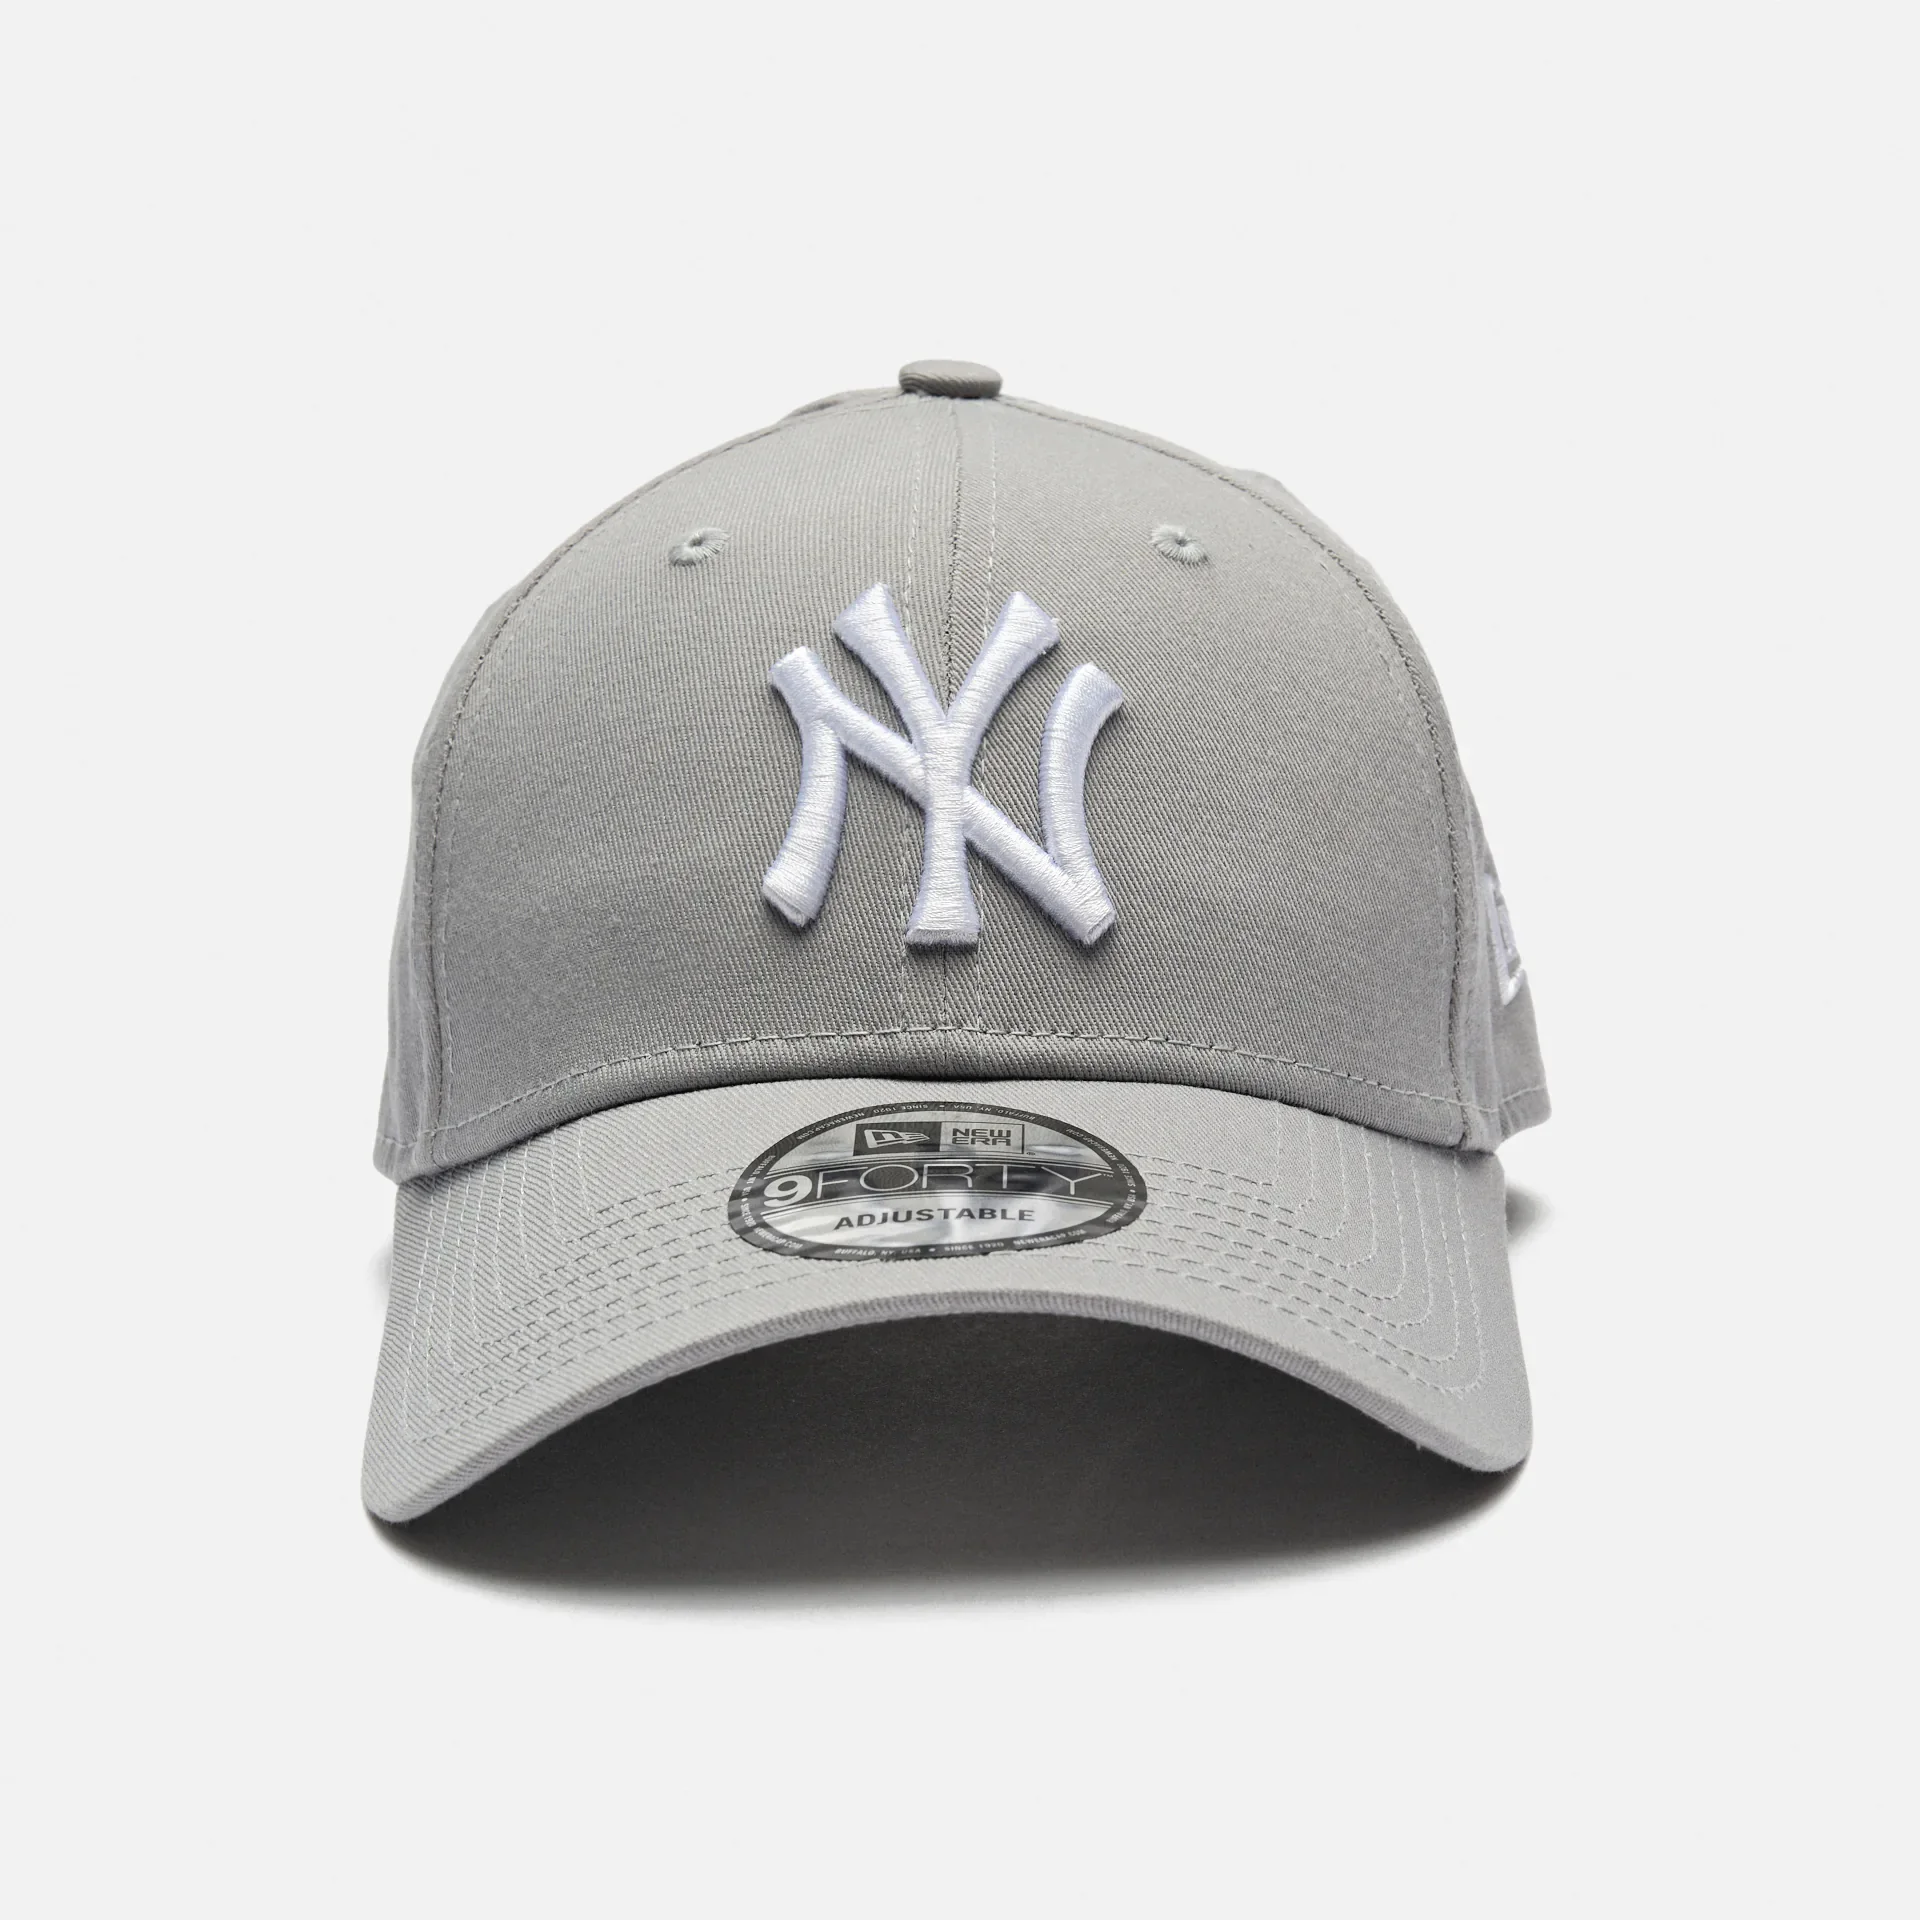  New Era 9FORTY Leag Basic NY Yankees Stapback Cap Gray White